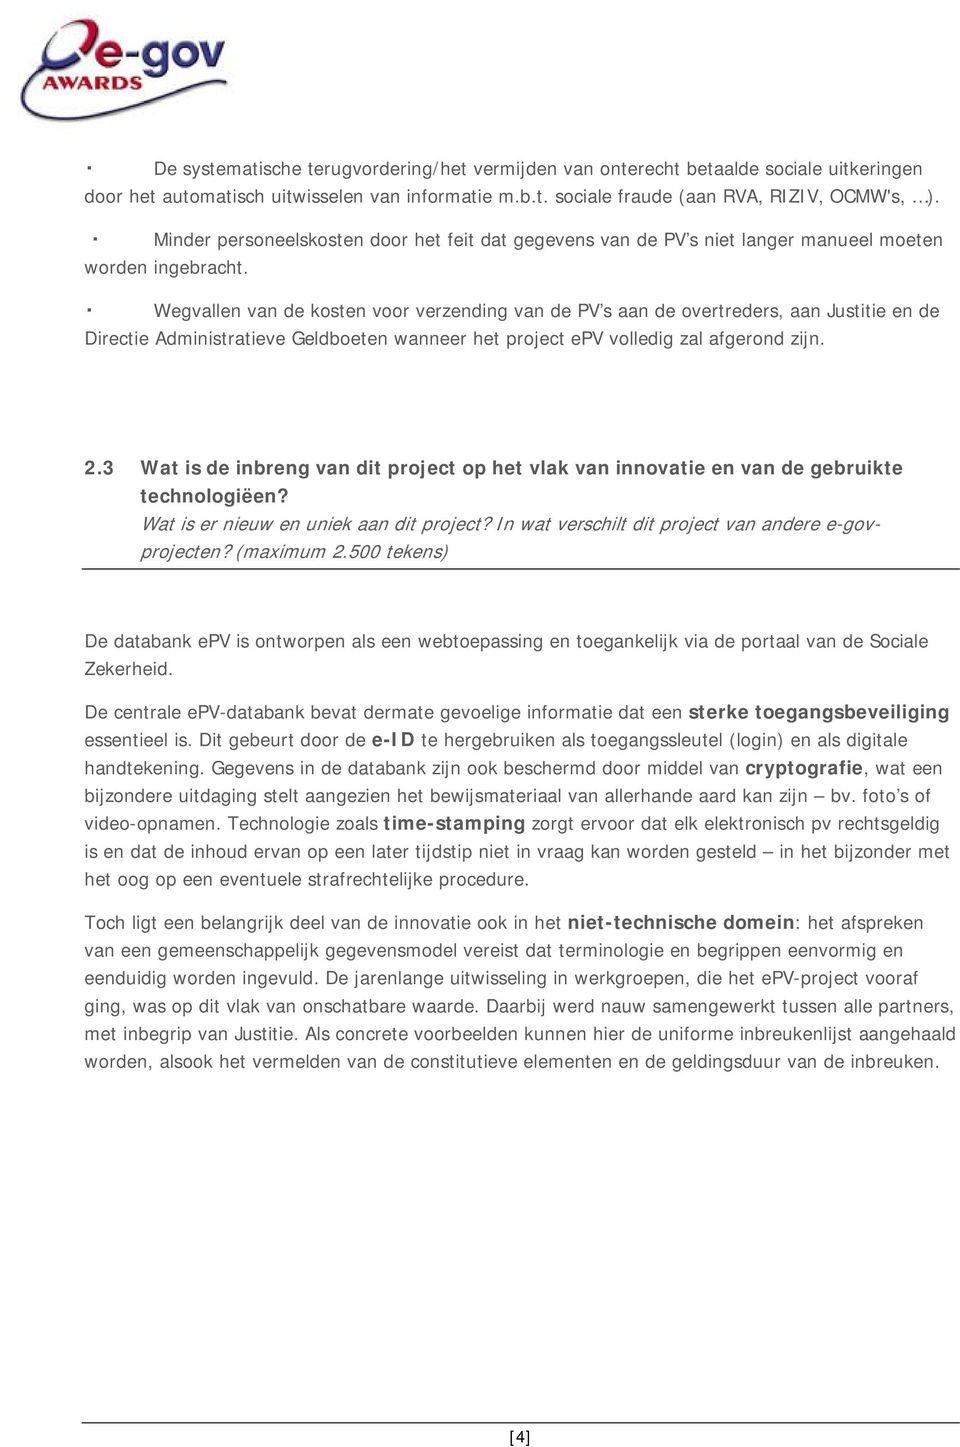 Wegvallen van de kosten voor verzending van de PV s aan de overtreders, aan Justitie en de Directie Administratieve Geldboeten wanneer het project epv volledig zal afgerond zijn. 2.